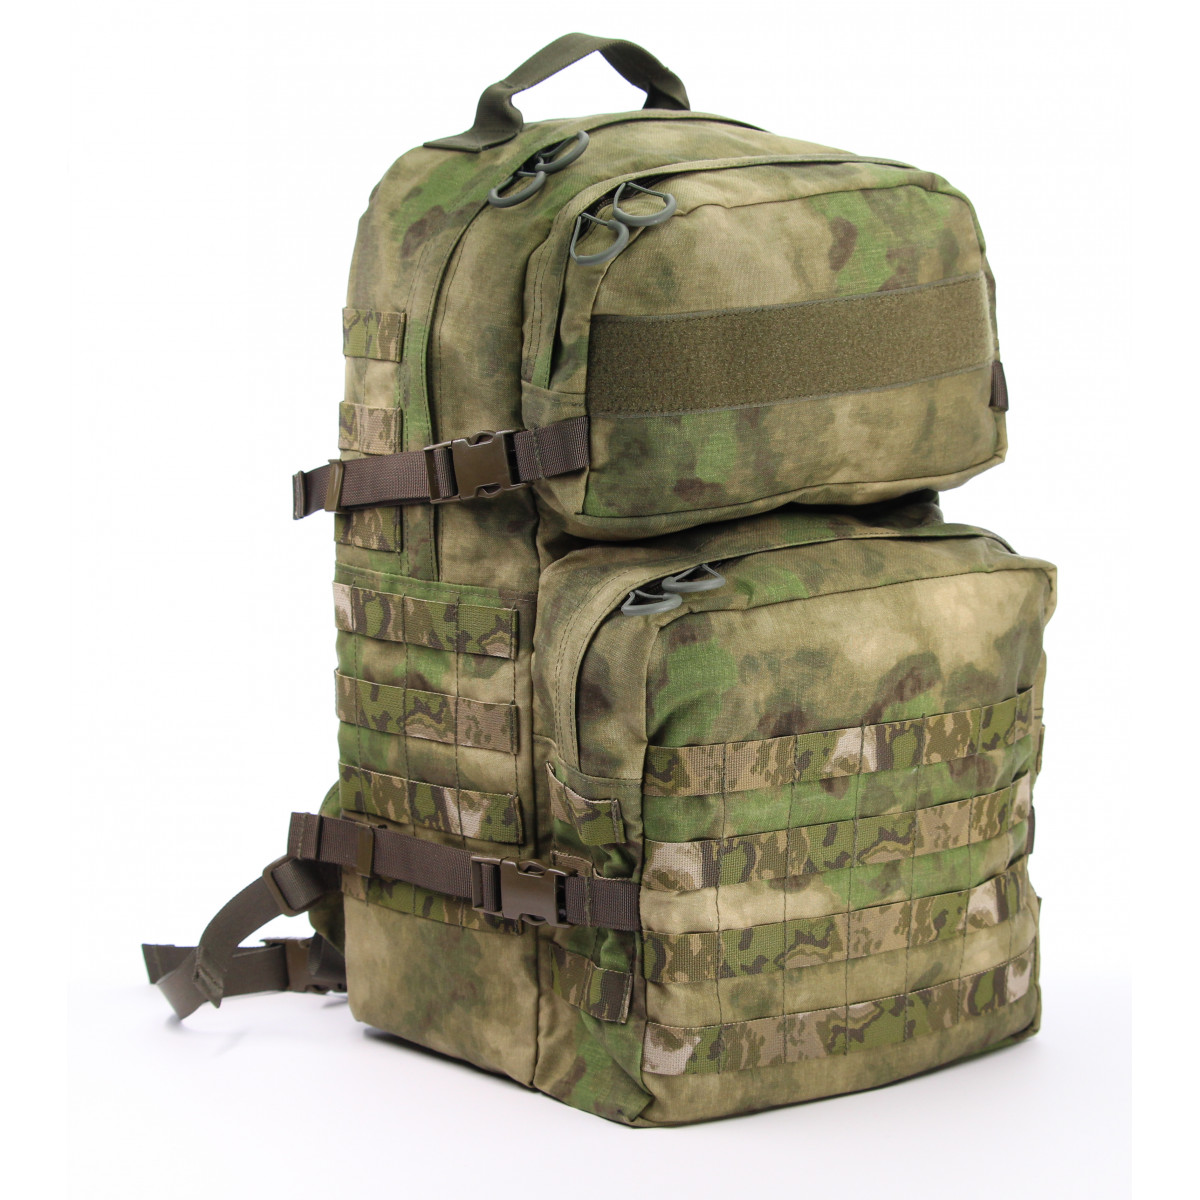 Mission Backpack Standard 45 Liter